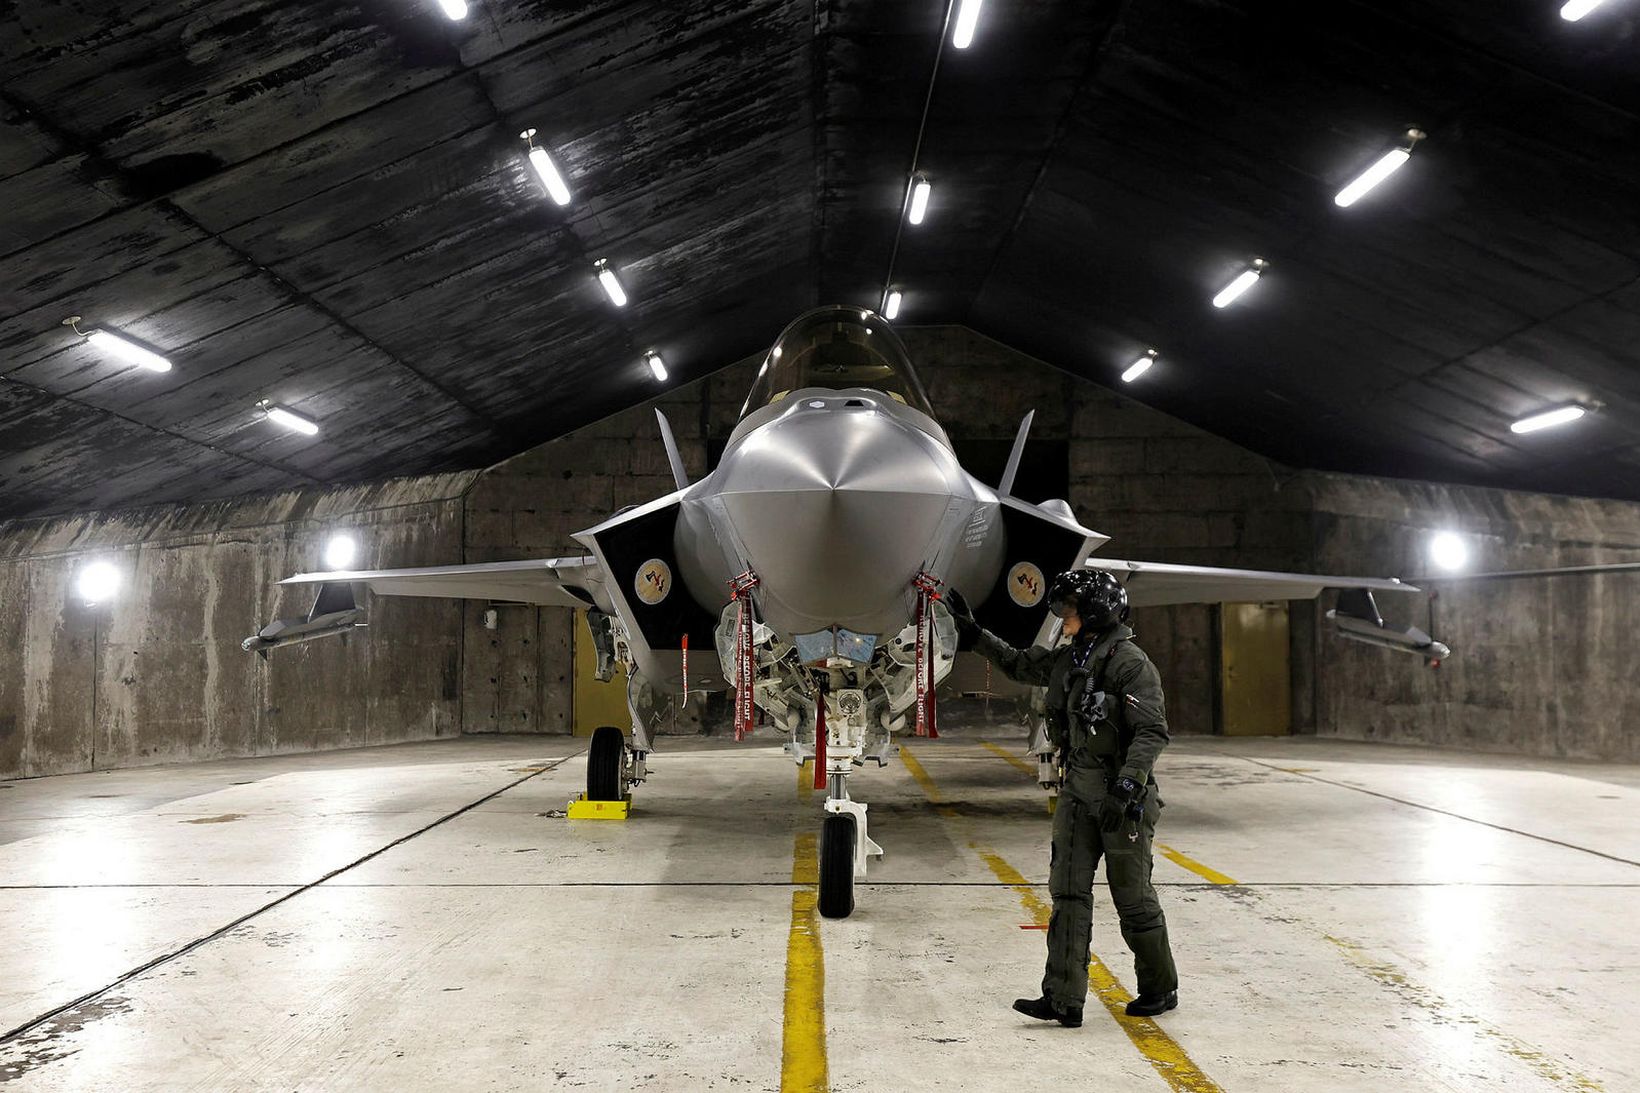 Norsk F-35-herþota sést hér í flugskýli sínu í Keflavík. Perry …